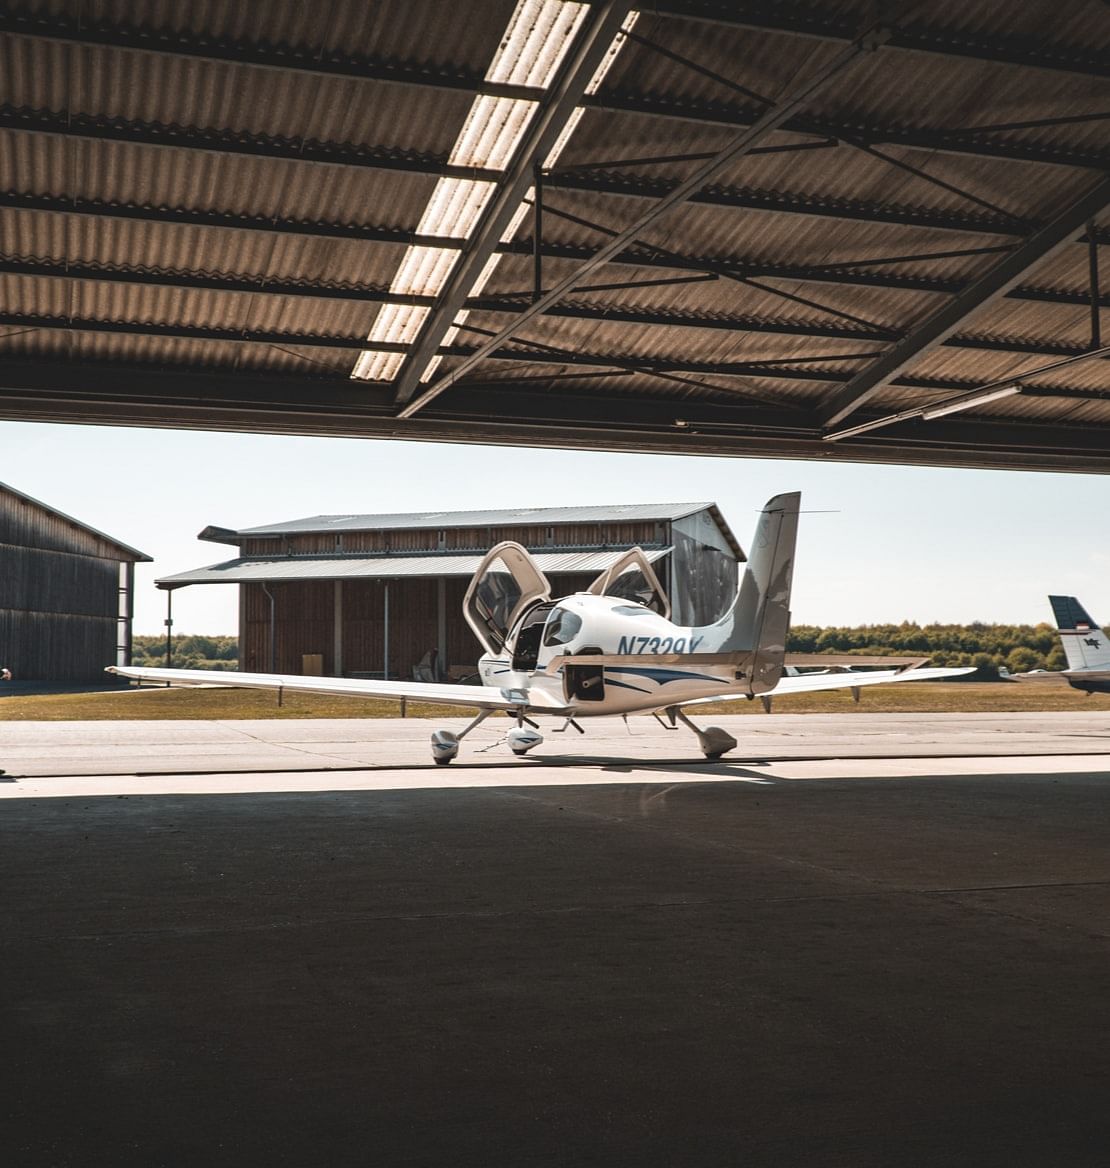 Un avion léger stationné dans un hangar